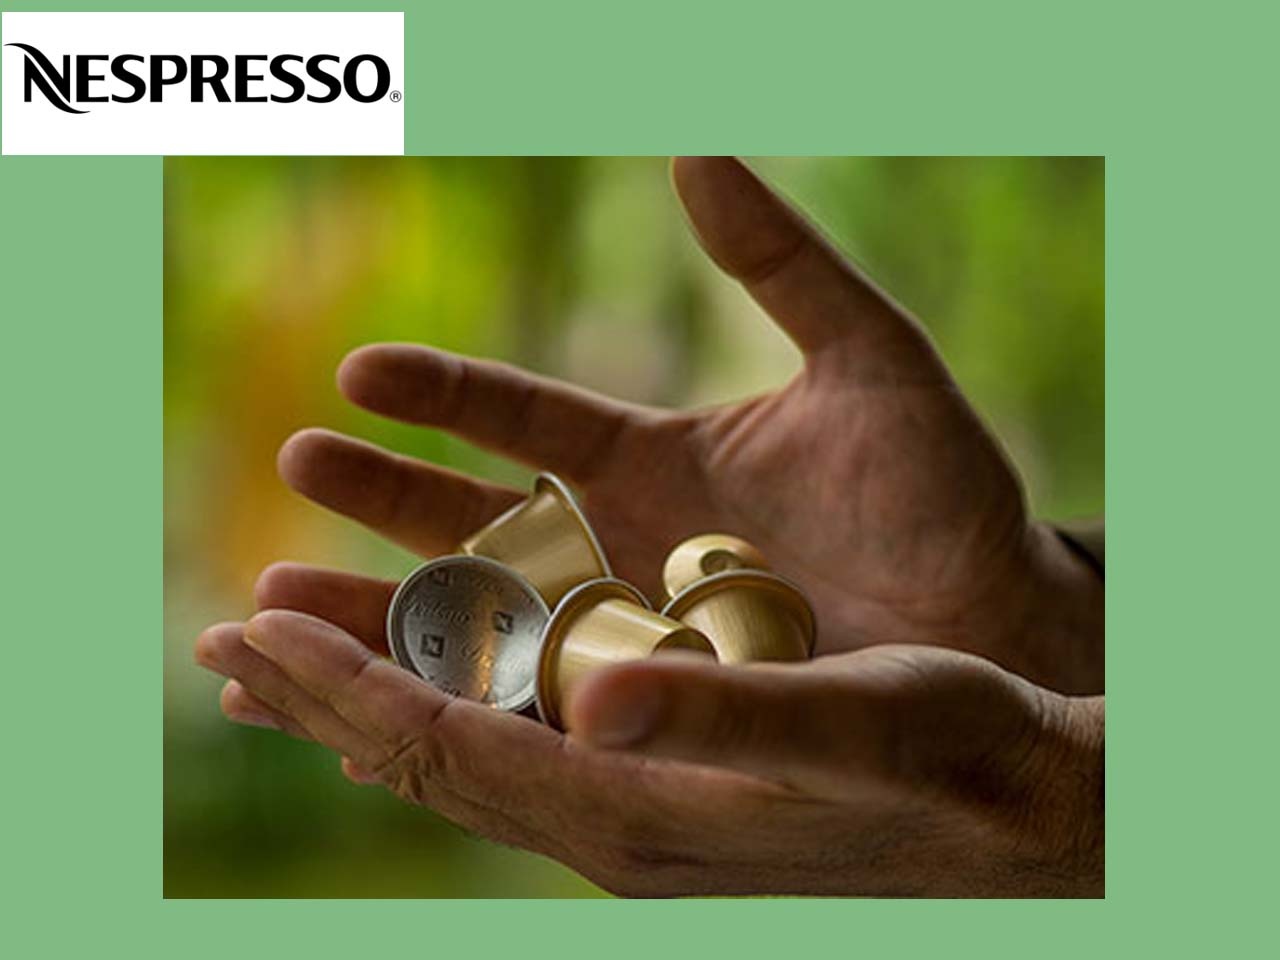 Nespresso agit en faveur de l’économie circulaire